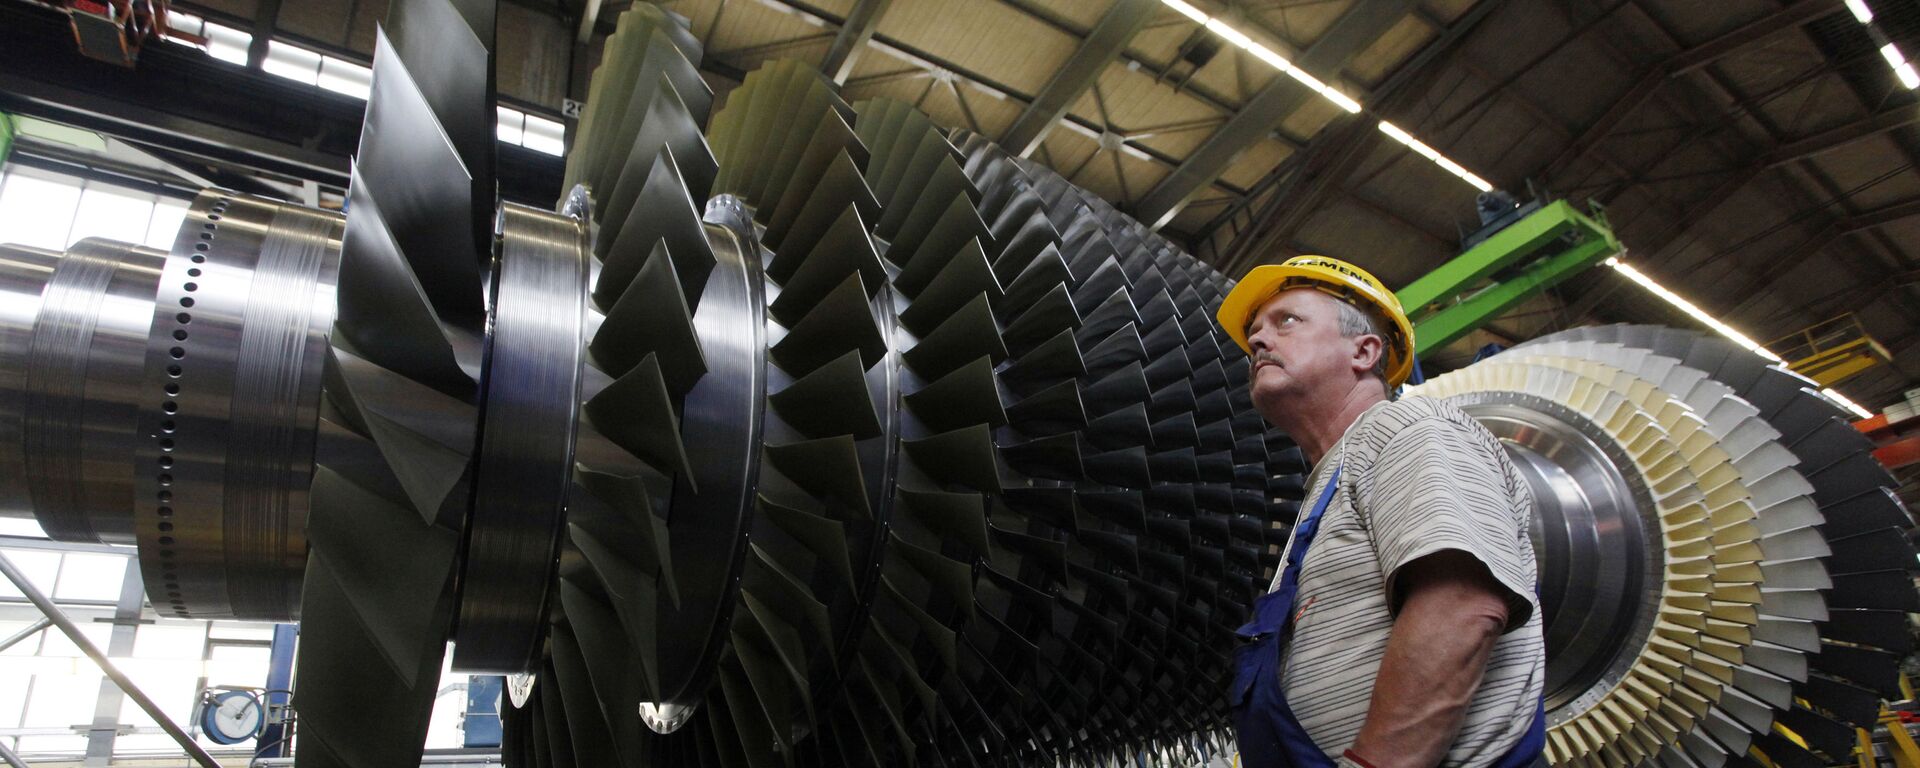 Radnik pored turbo-motora u fabrici Simens u Nemačkoj - Sputnik Srbija, 1920, 04.01.2021